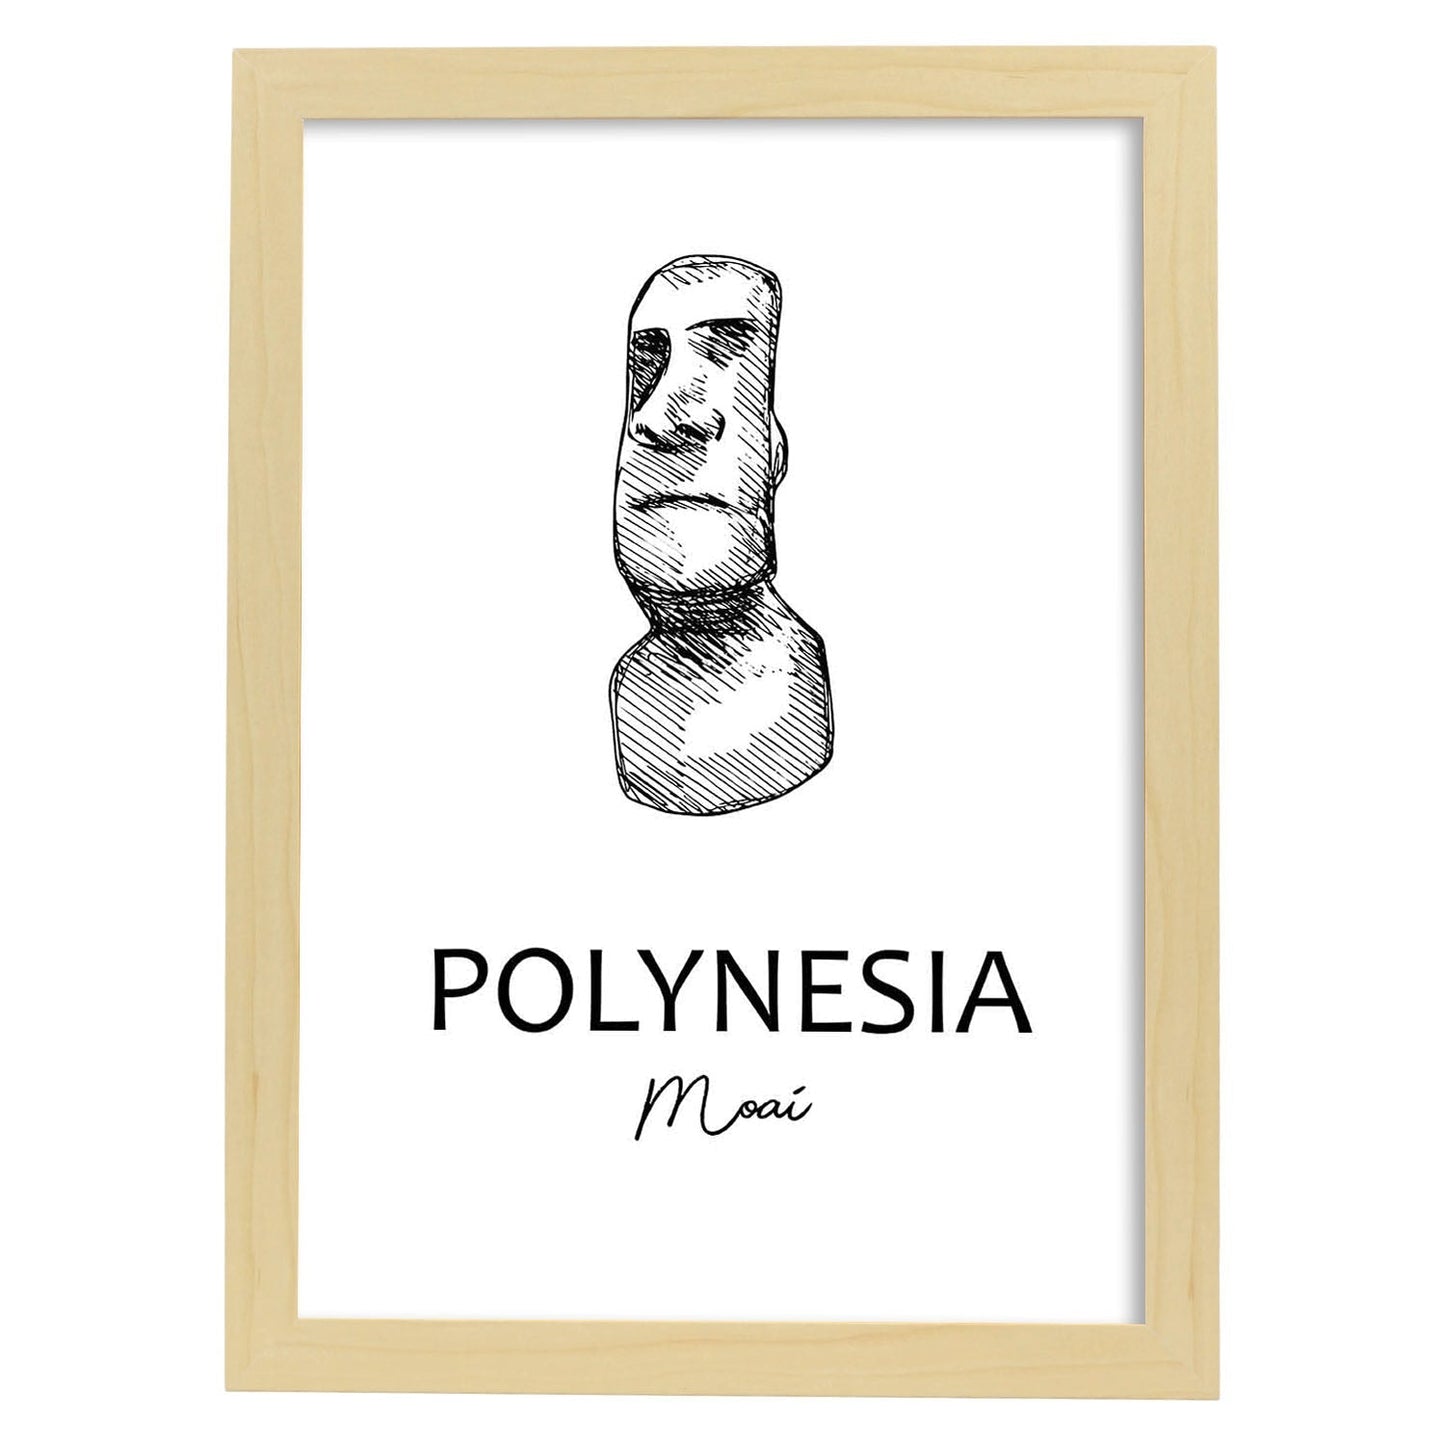 Poster de Polinesia - Moai. Láminas con monumentos de ciudades.-Artwork-Nacnic-A4-Marco Madera clara-Nacnic Estudio SL